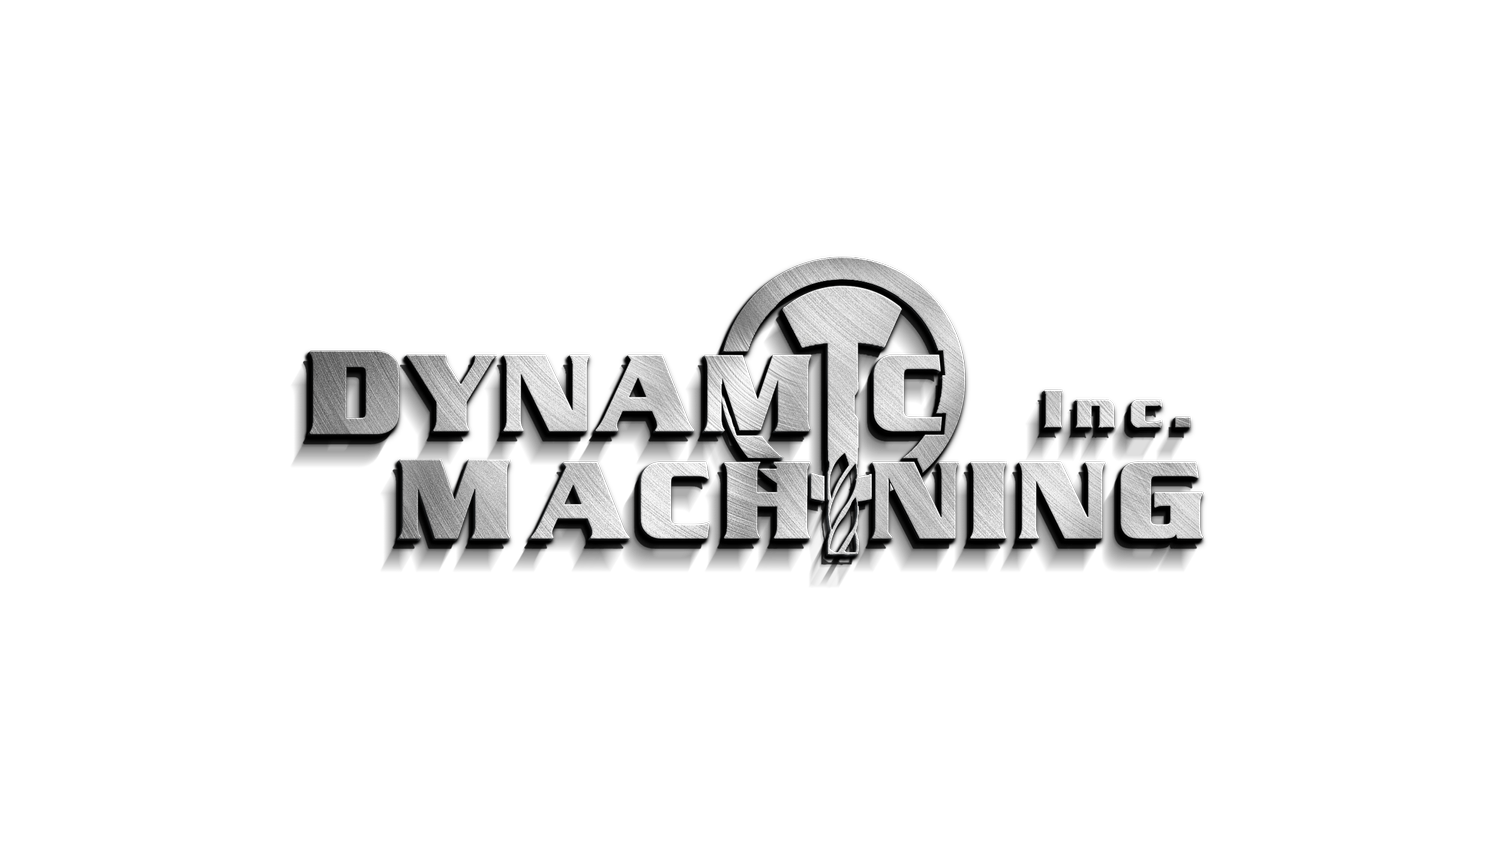 DYNAMIC MACHINING INC